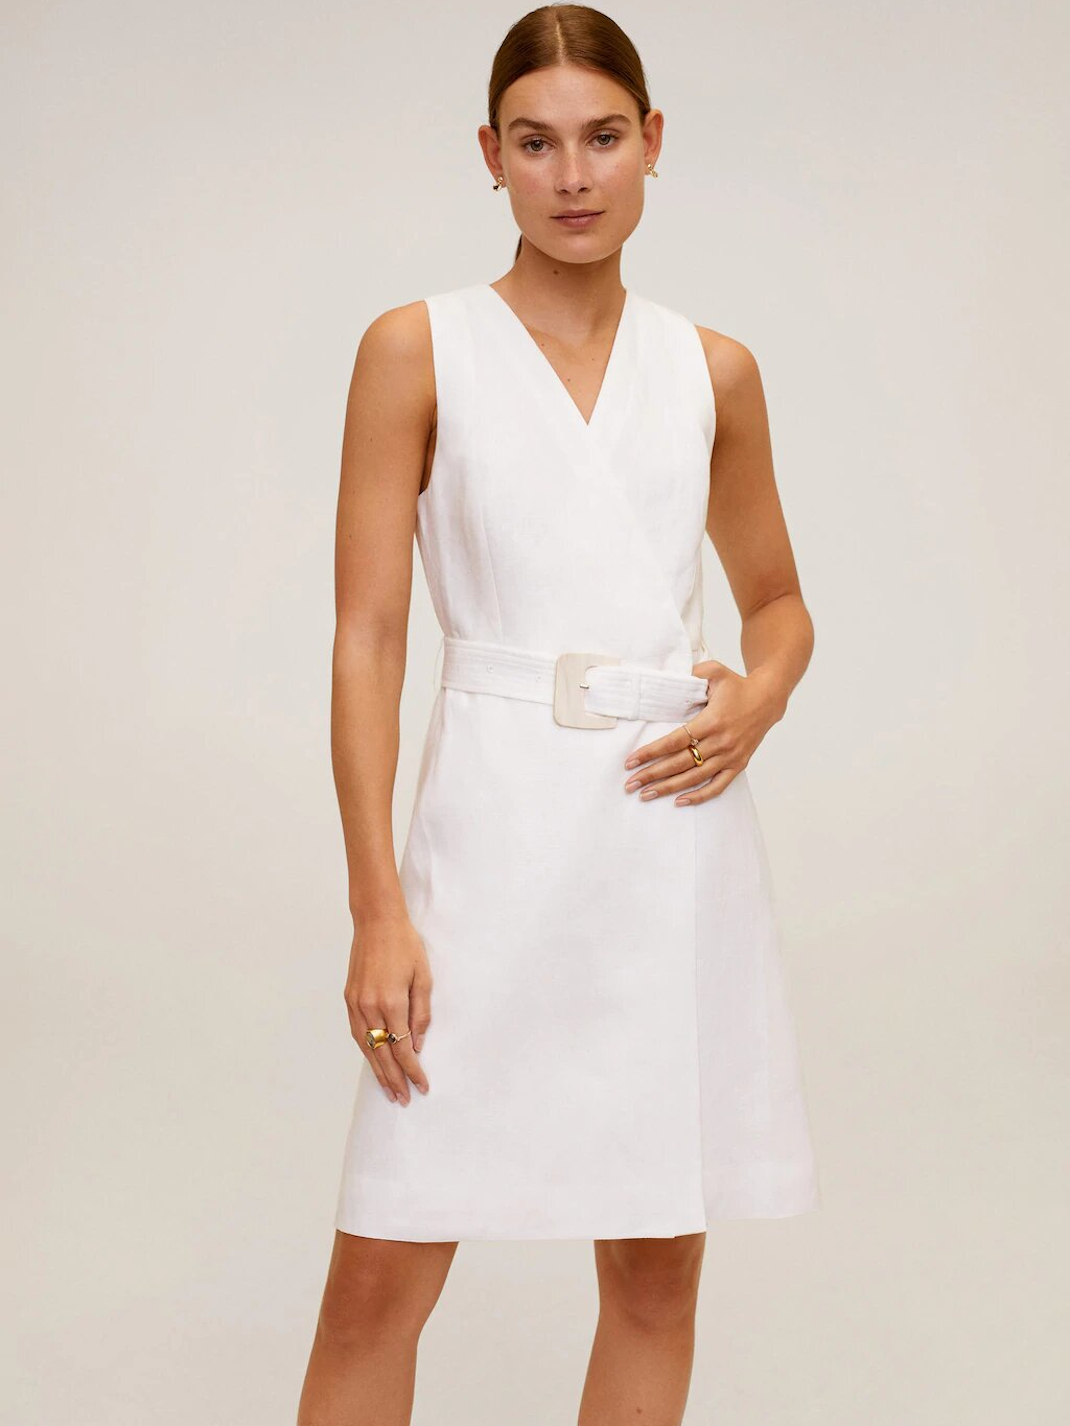 μοντέλο με λευκό φόρεμα